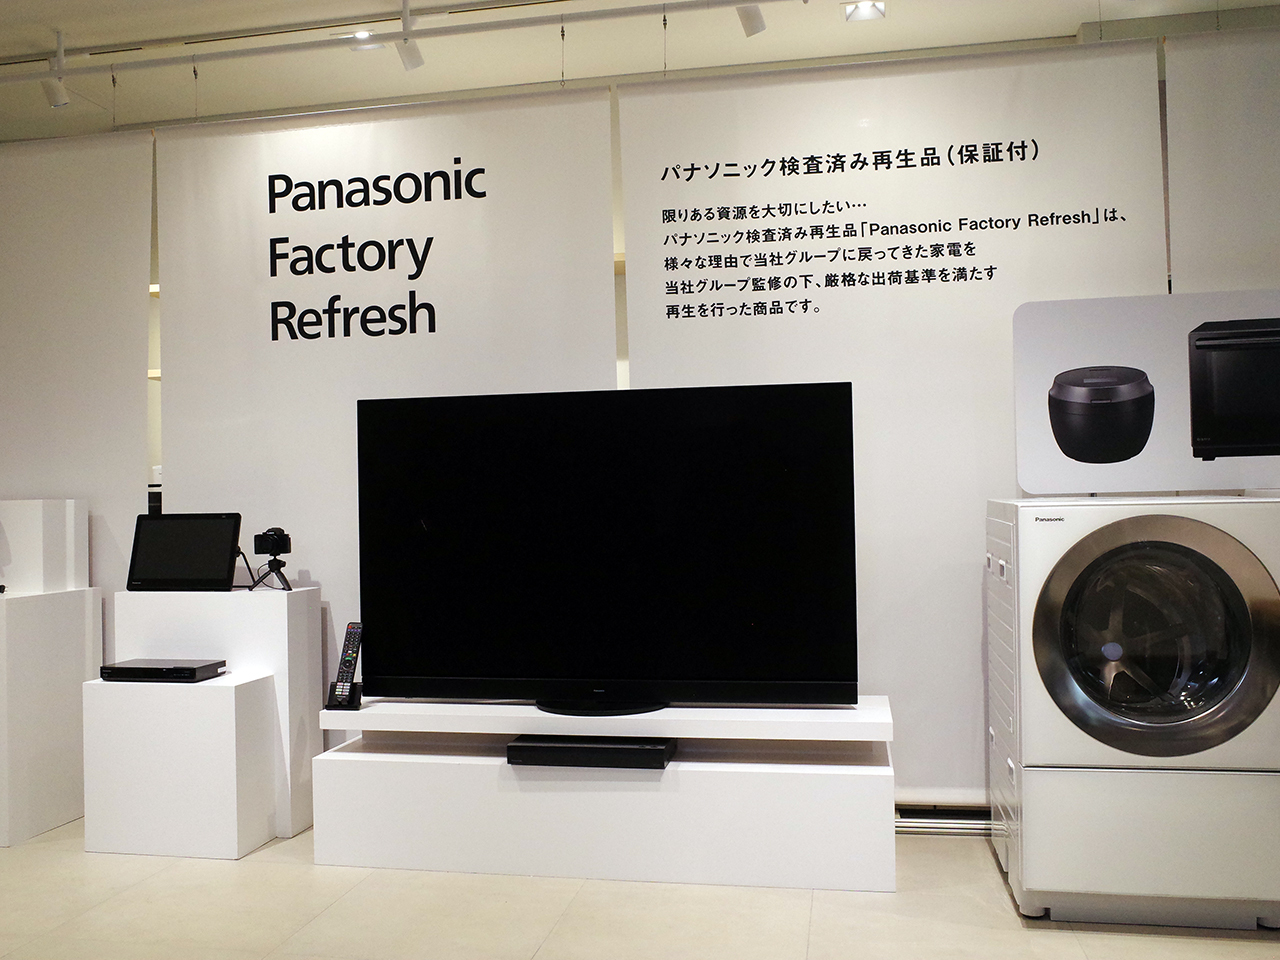 パナソニックではリファービッシュ品を「Panasonic Factory Refresh」と名付け展開していく